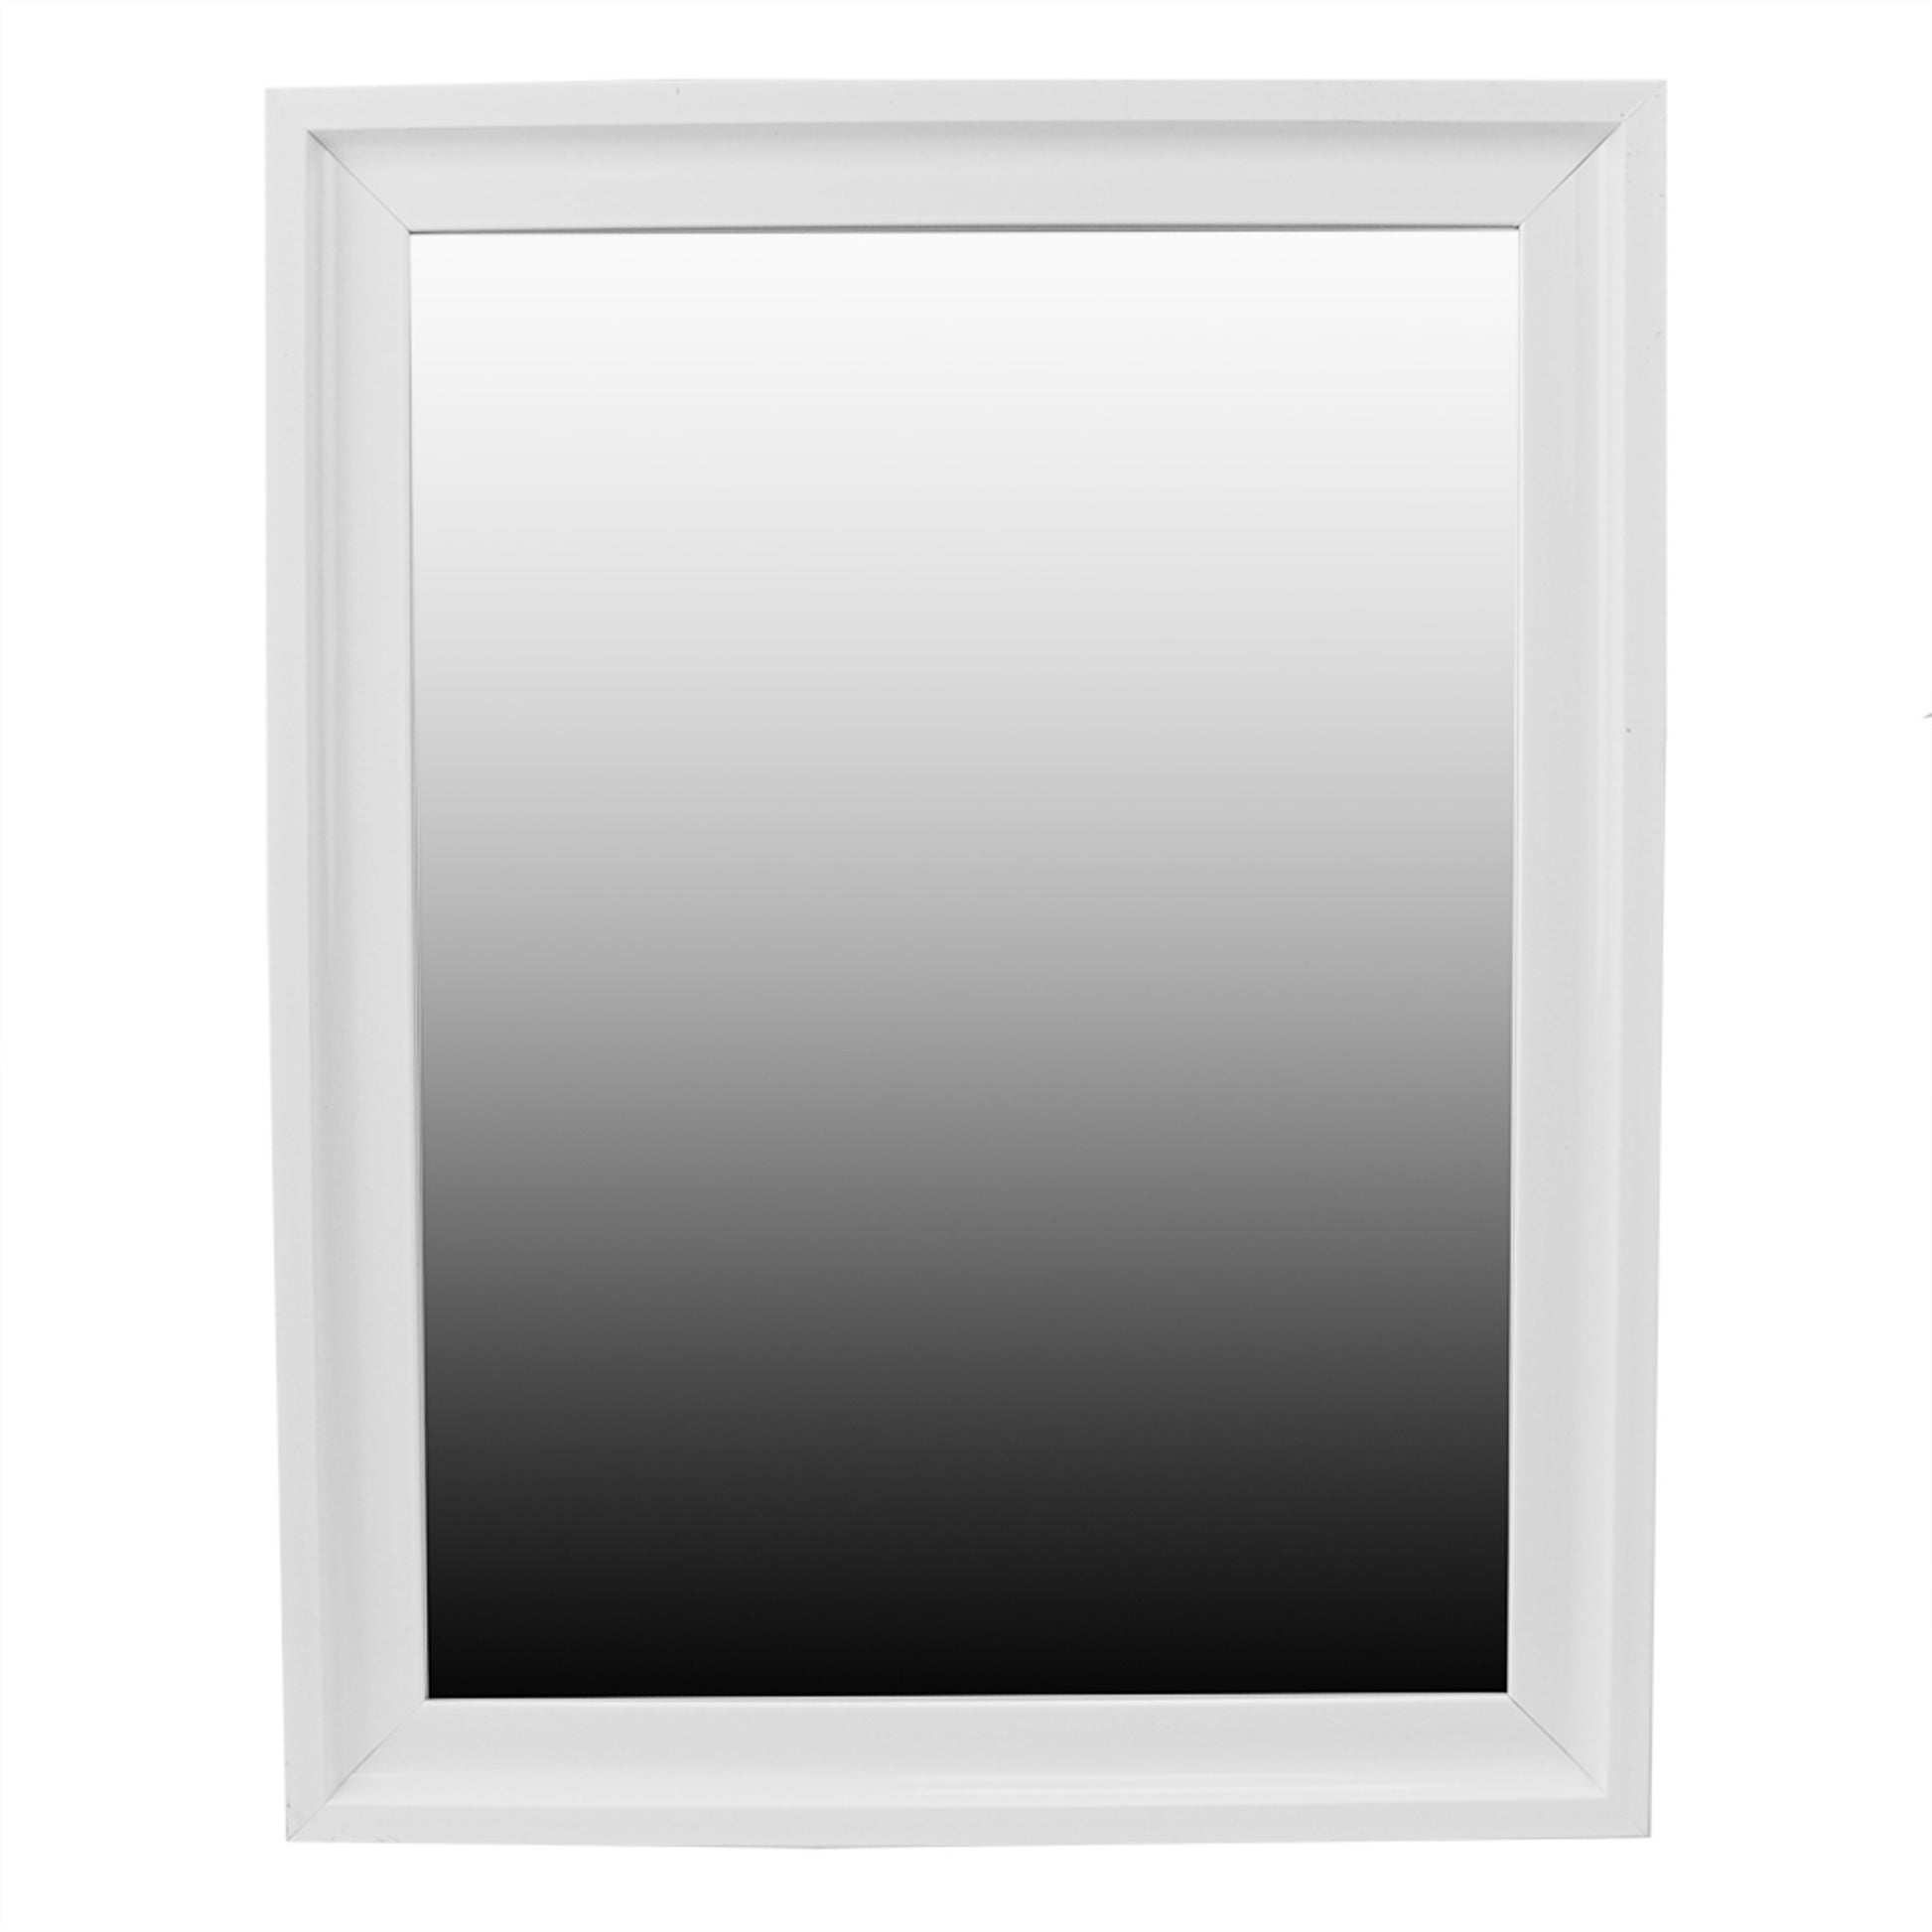 Home Basics Textured Wall Mirror, White - White